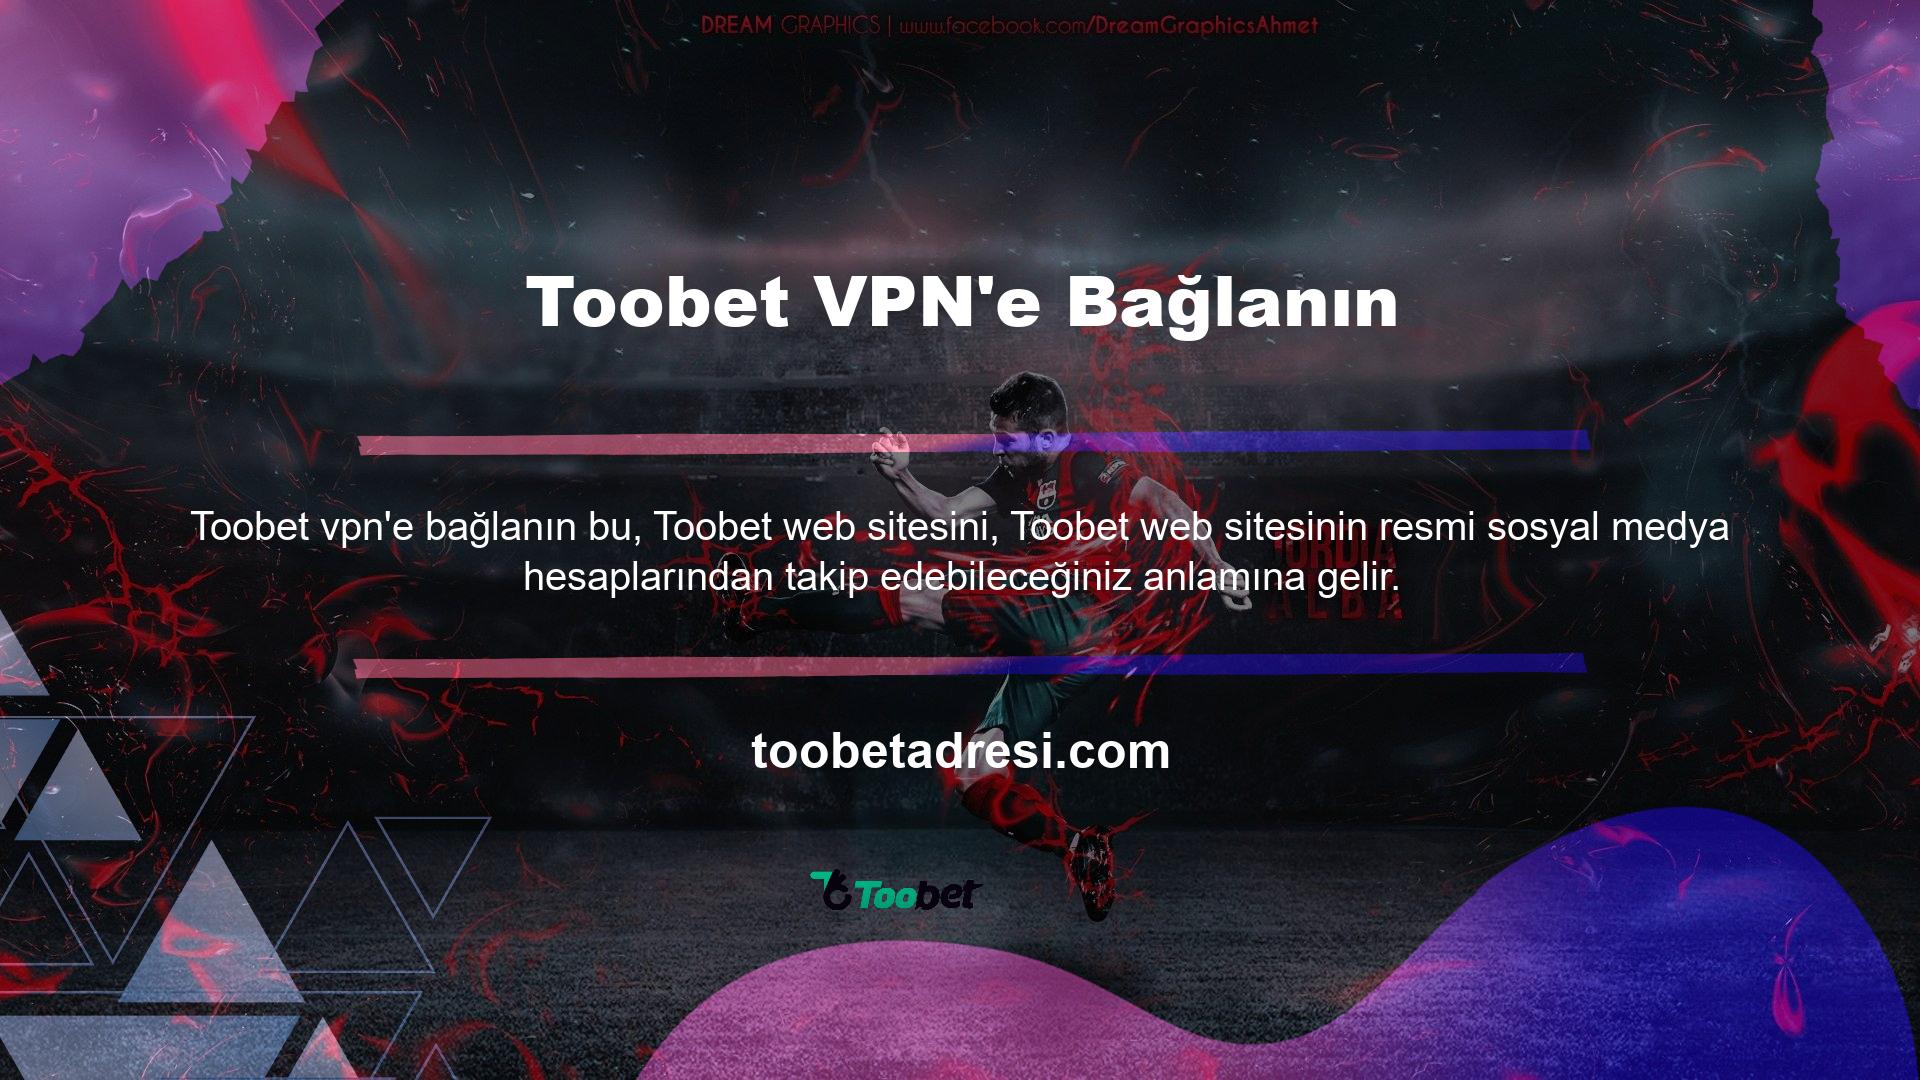 Toobet web sitesi tüm sosyal medya hesaplarını aktif olarak kullanmaktadır